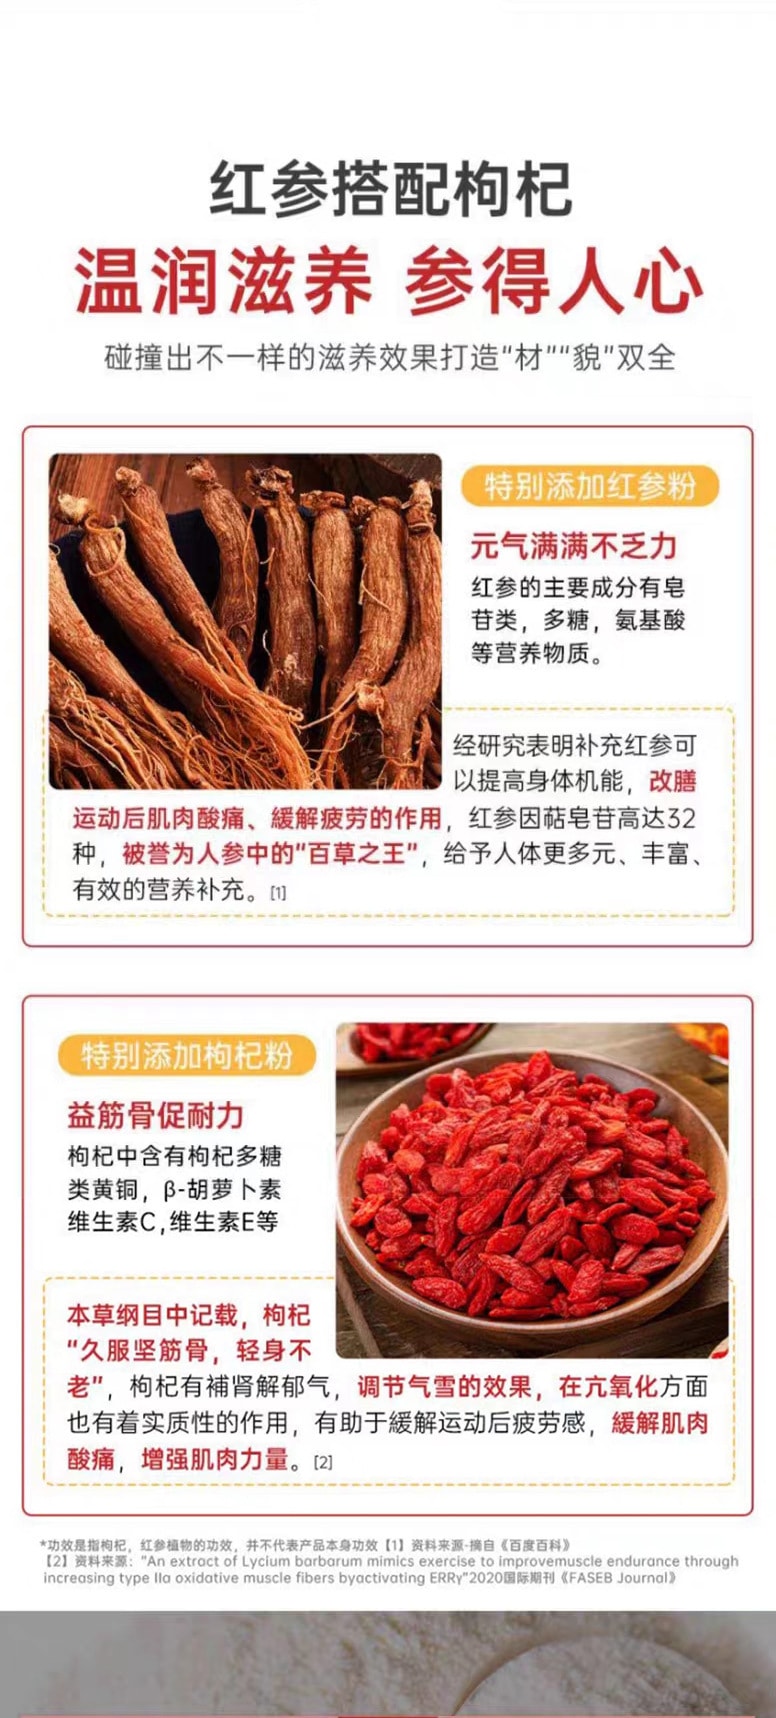 中國 鴻恩本草 紅參多維片 32克 (0.8克*40粒) 每片添加紅參 16mg 運動營養保健食品